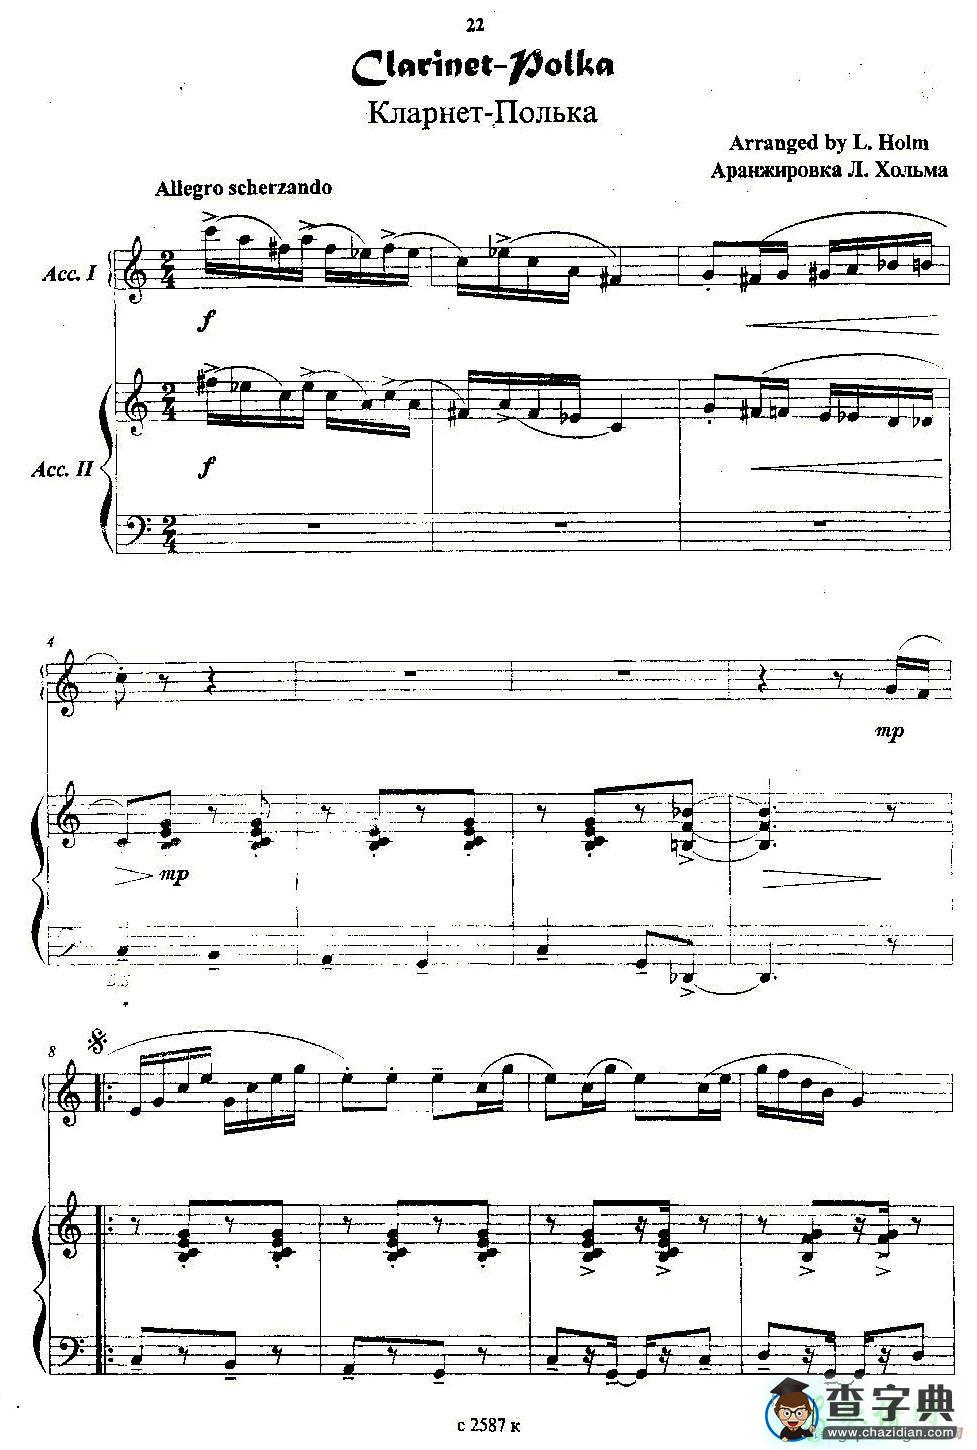 单簧管波尔卡手风琴谱